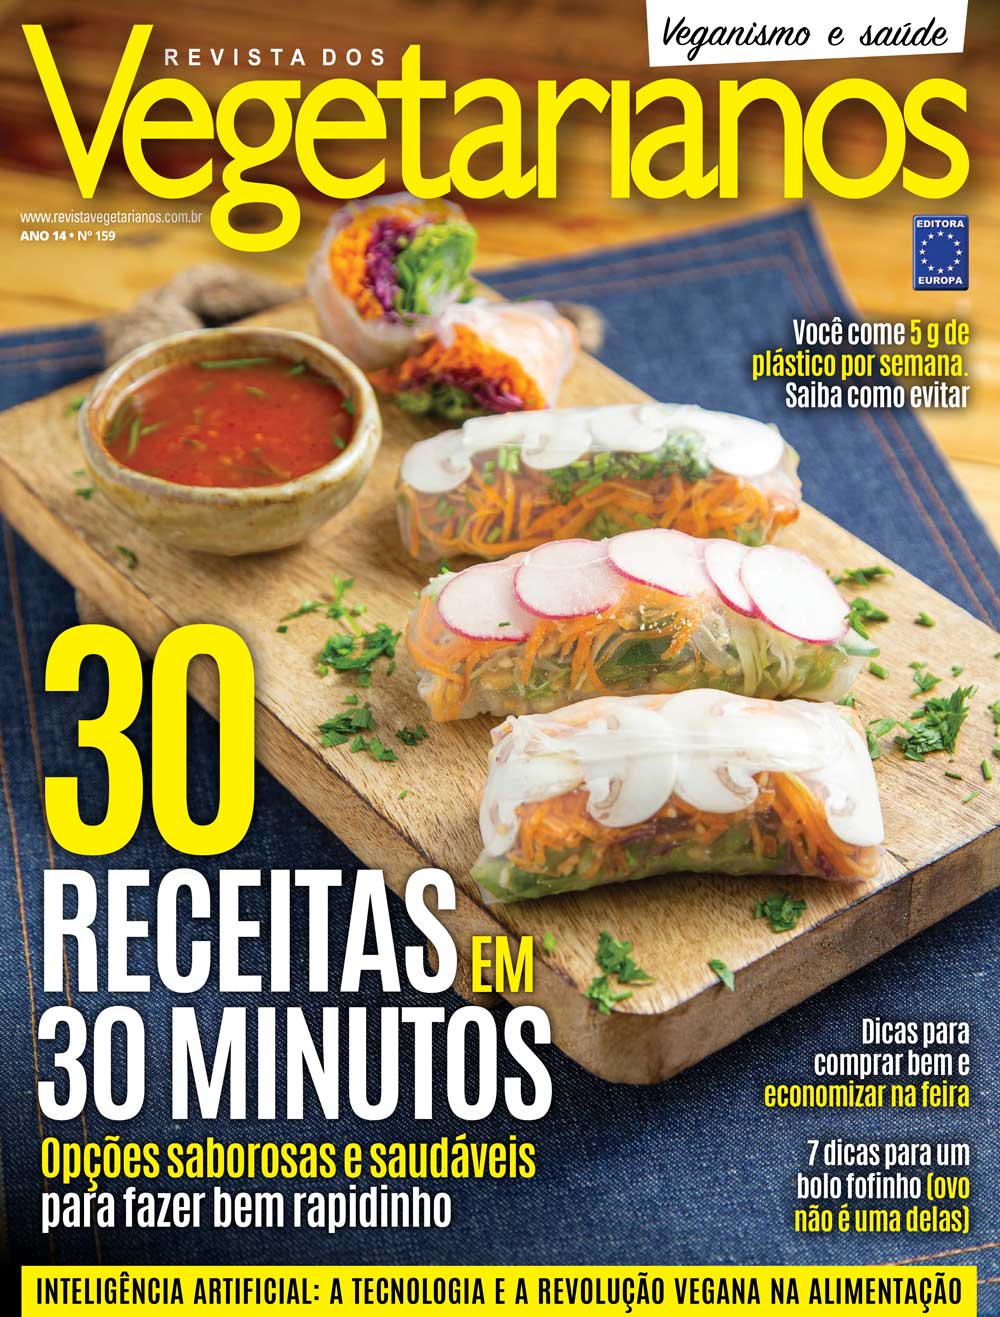 Revista dos Vegetarianos - Edição 159